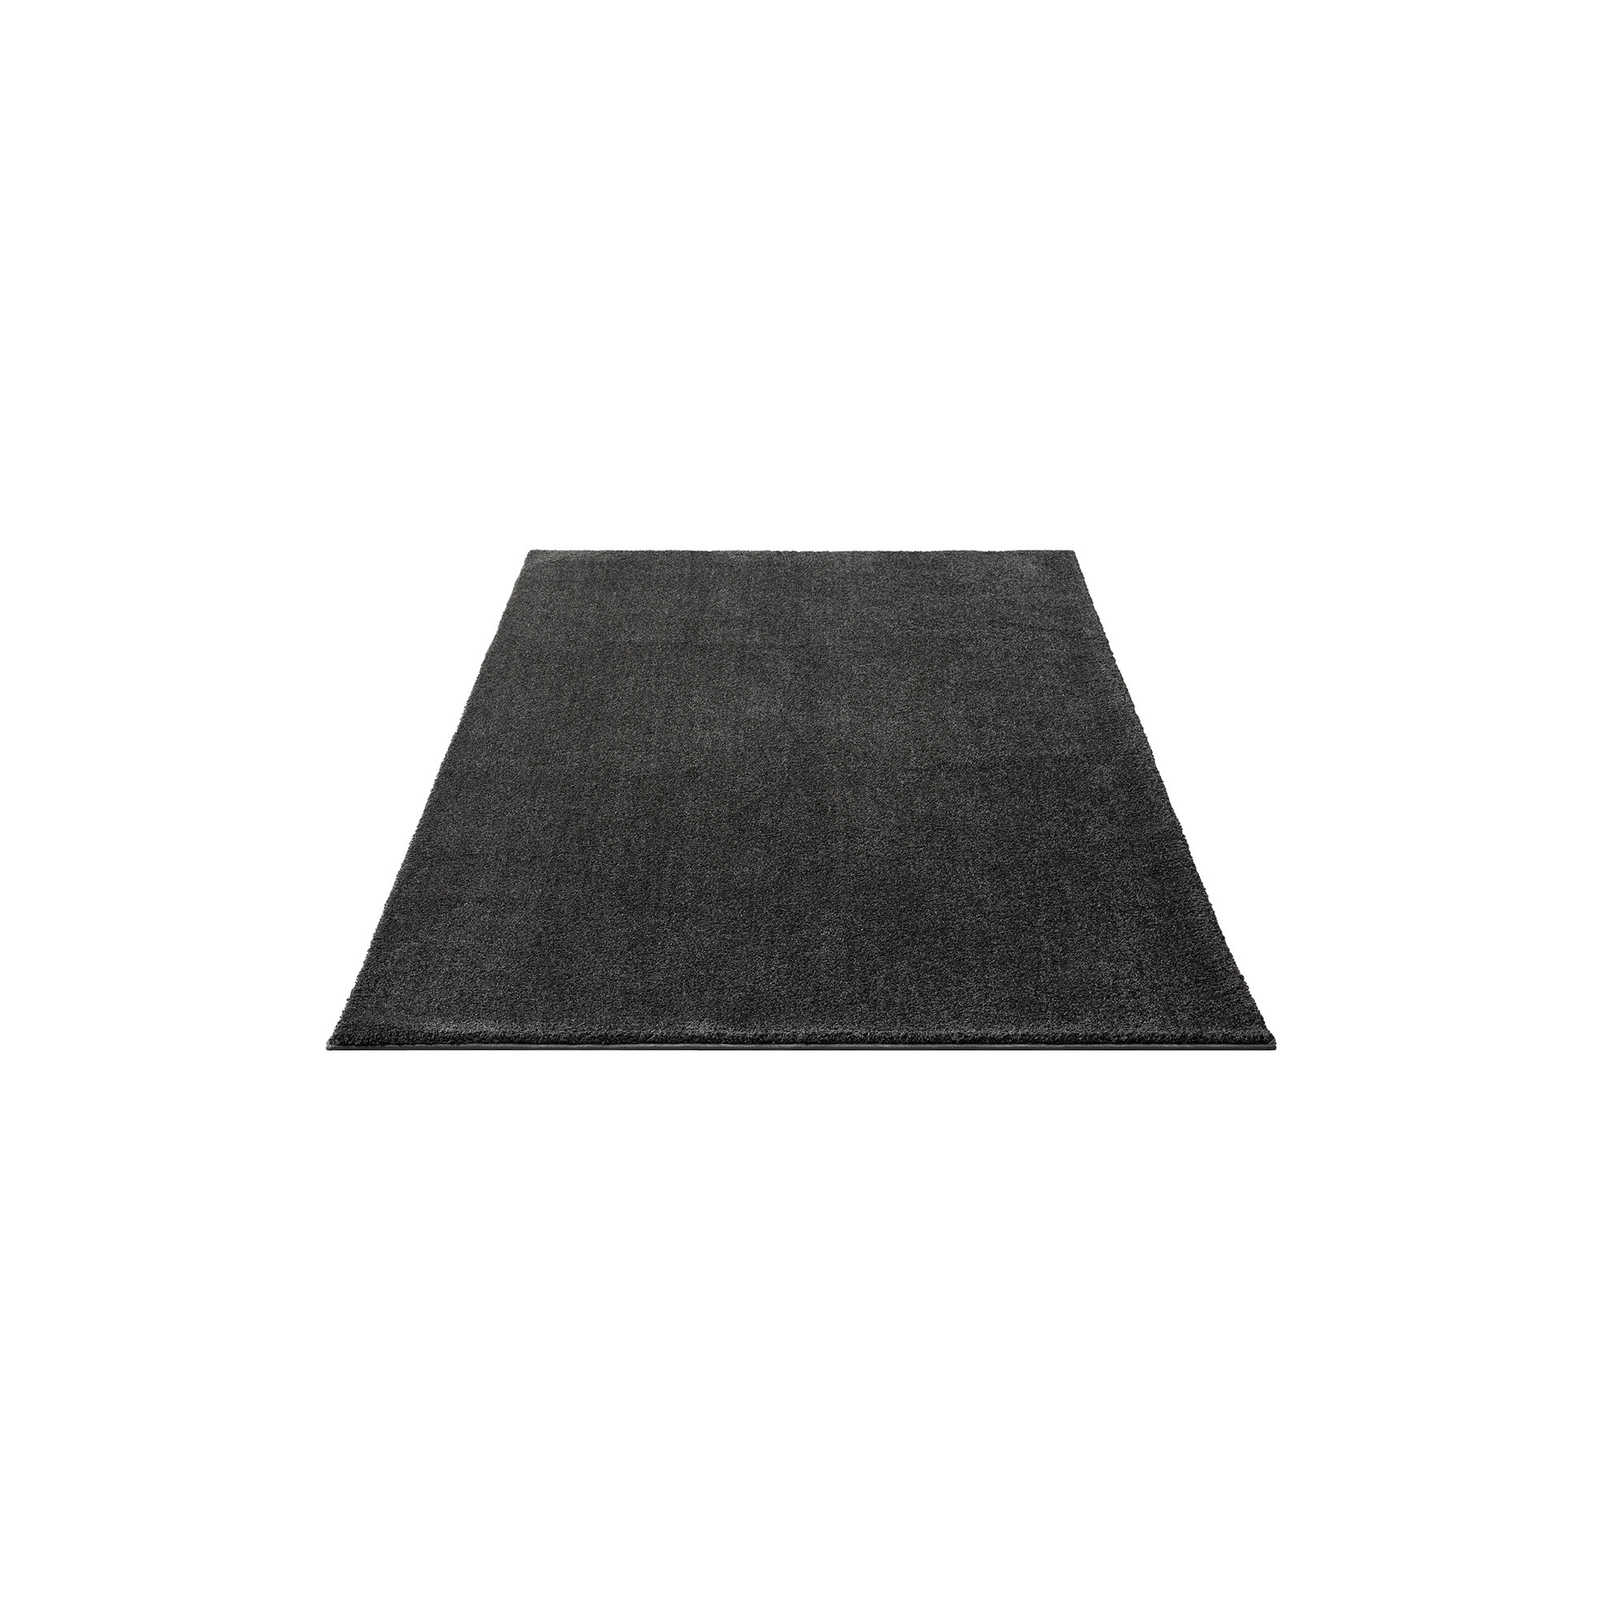 Zacht kortpolig tapijt in antraciet - 170 x 120 cm
